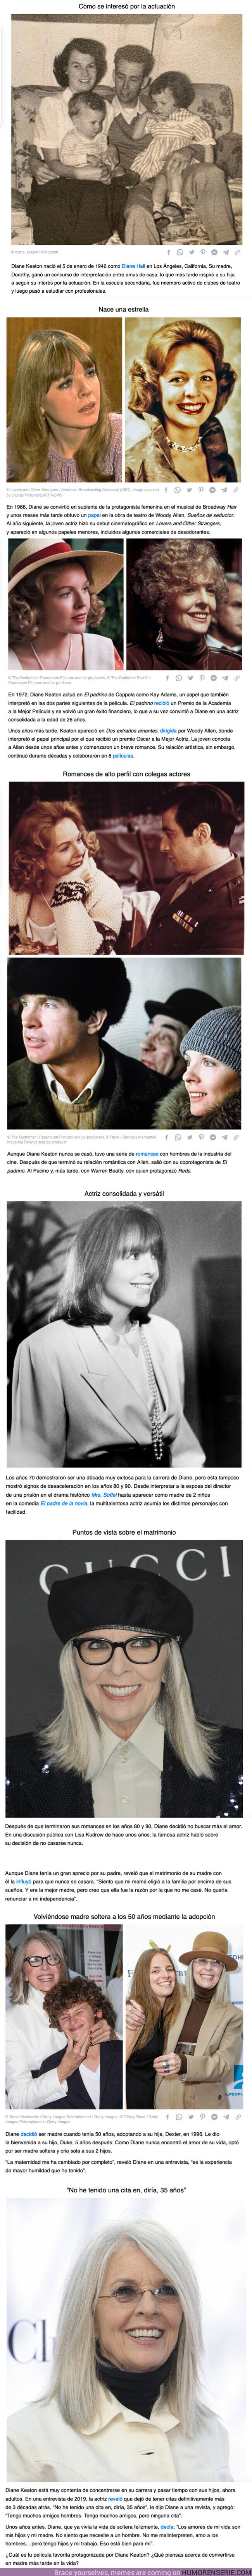 113572 - GALERÍA: Diane Keaton revela por qué nunca se casó y por qué se convirtió en madre soltera a los 50